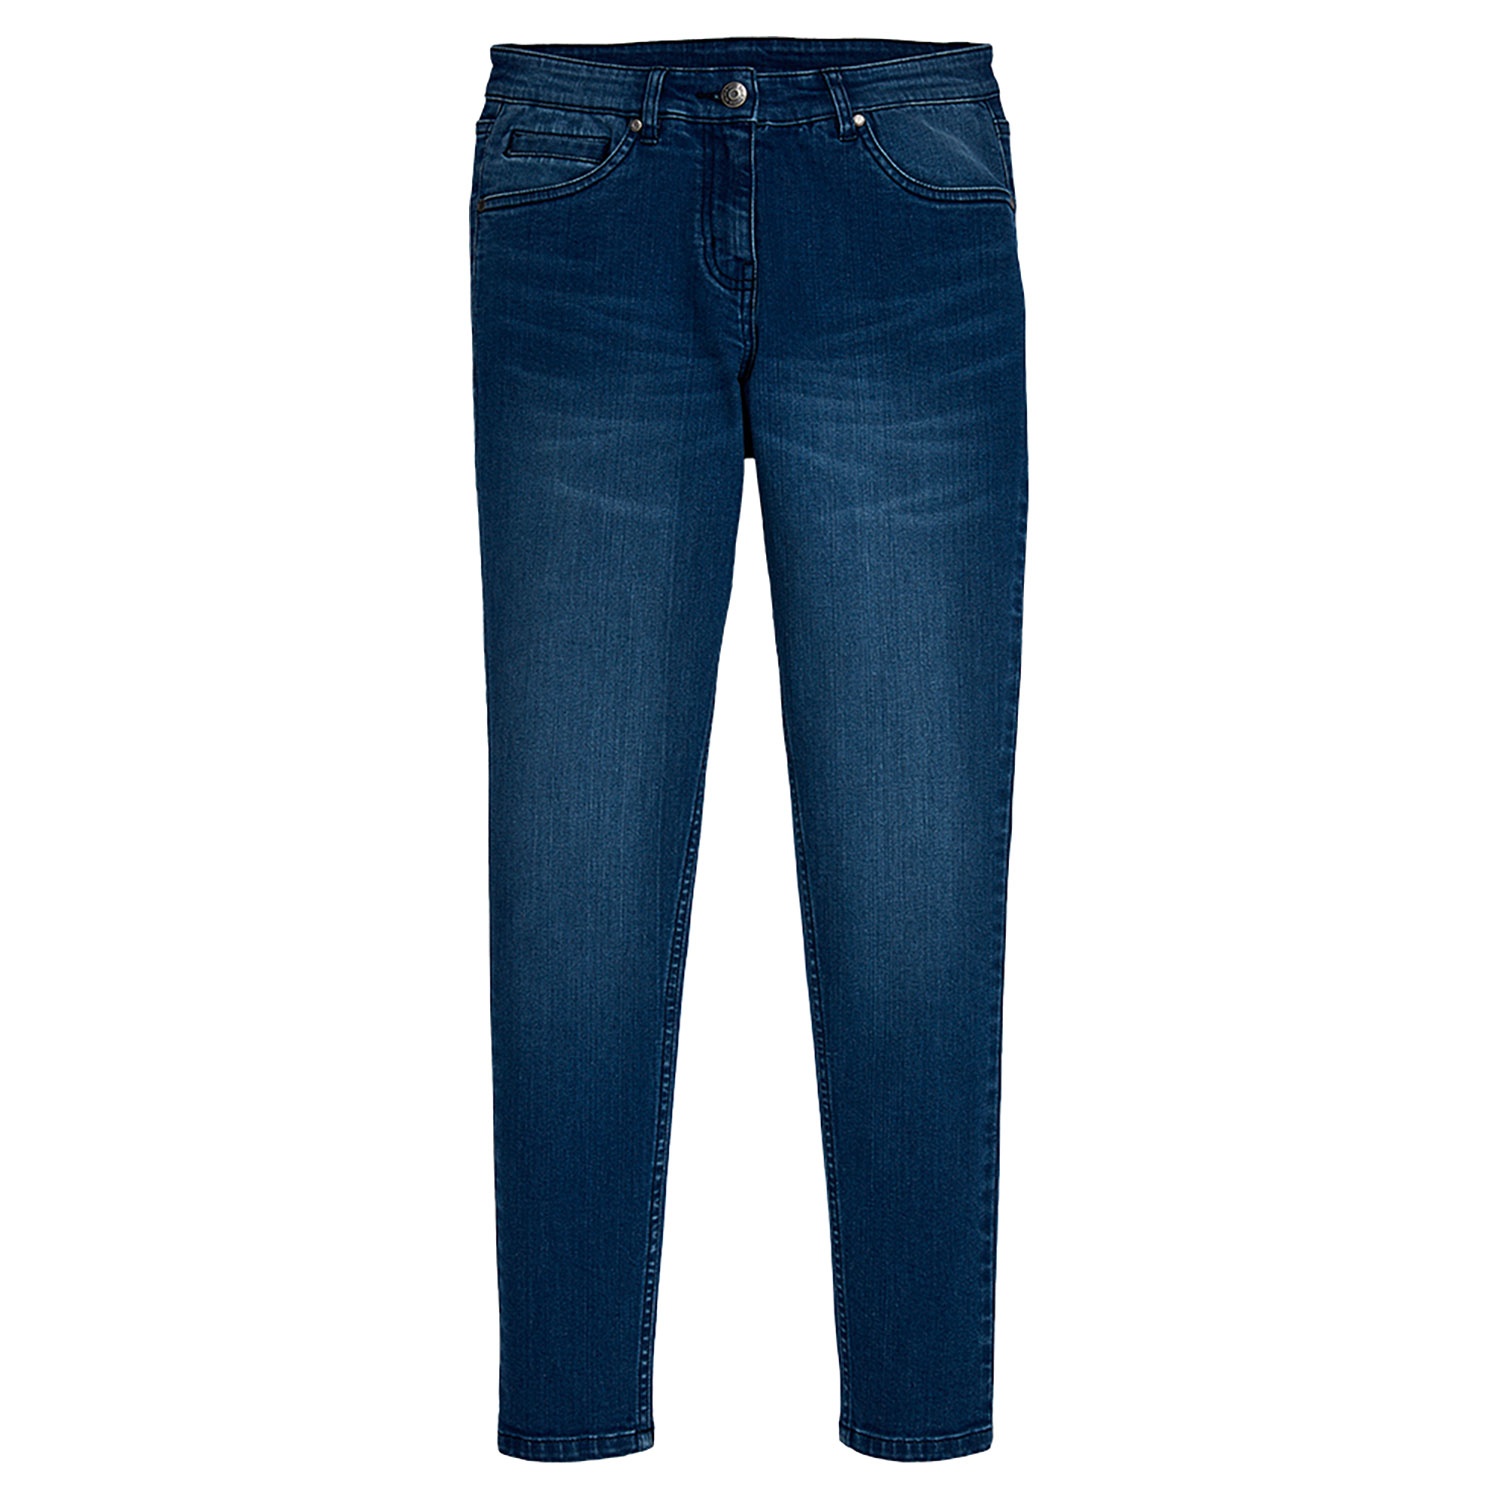 Damen Bekleidung Jeans Capri-Jeans und cropped Jeans Ausgestellte Jeans shelby in Blau PAIGE Kürzere 